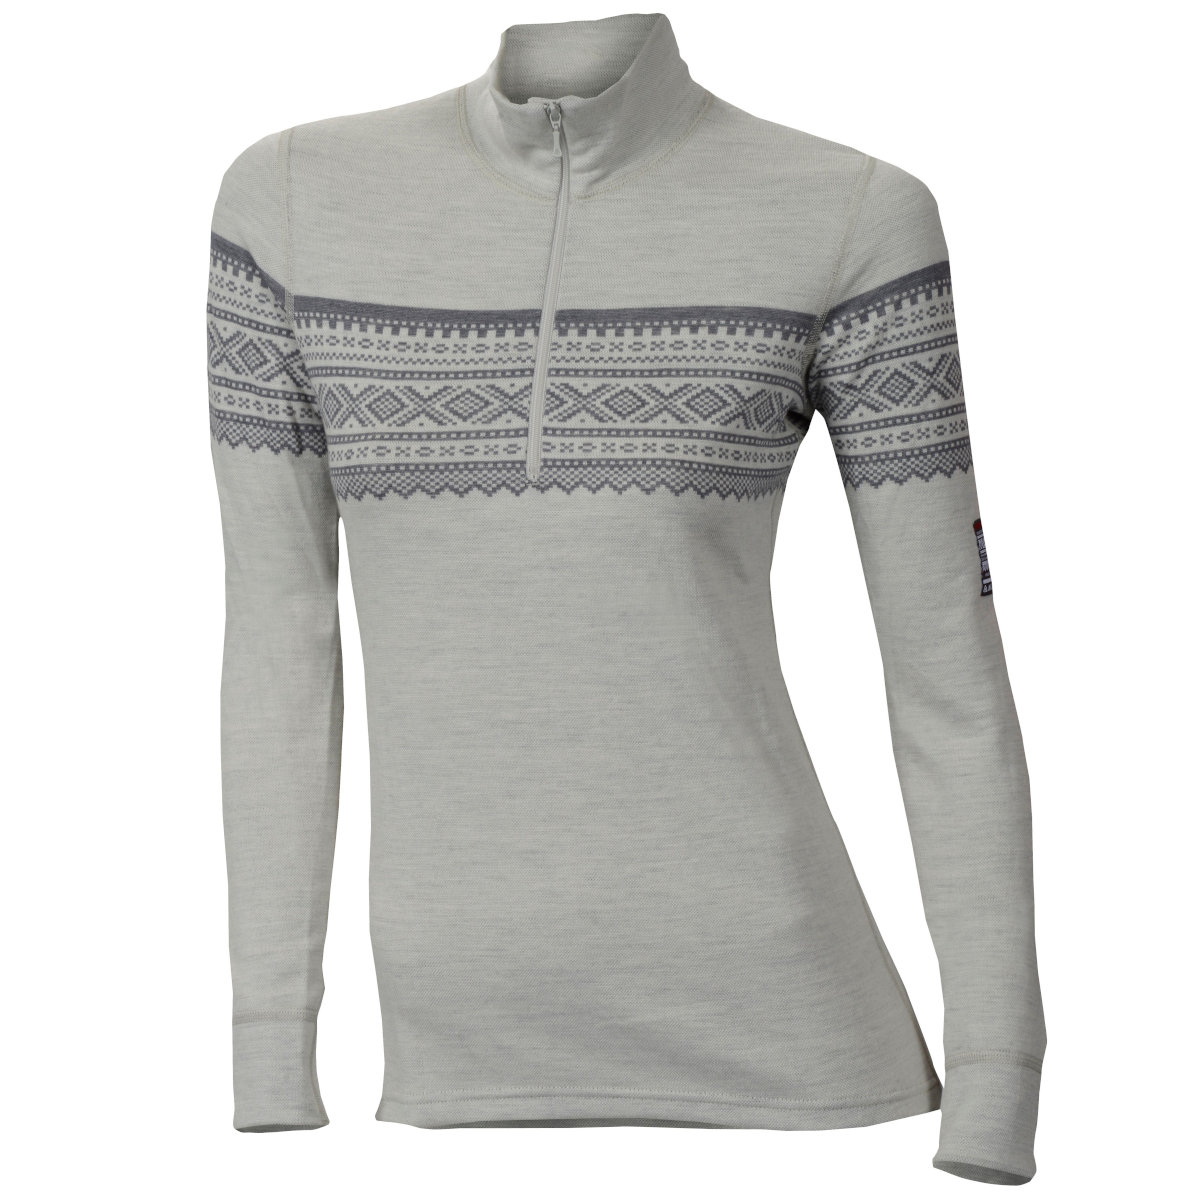 Produktbild von Aclima Designwool Marius Damen Langarmshirt mit Reißverschluss - gråfjell